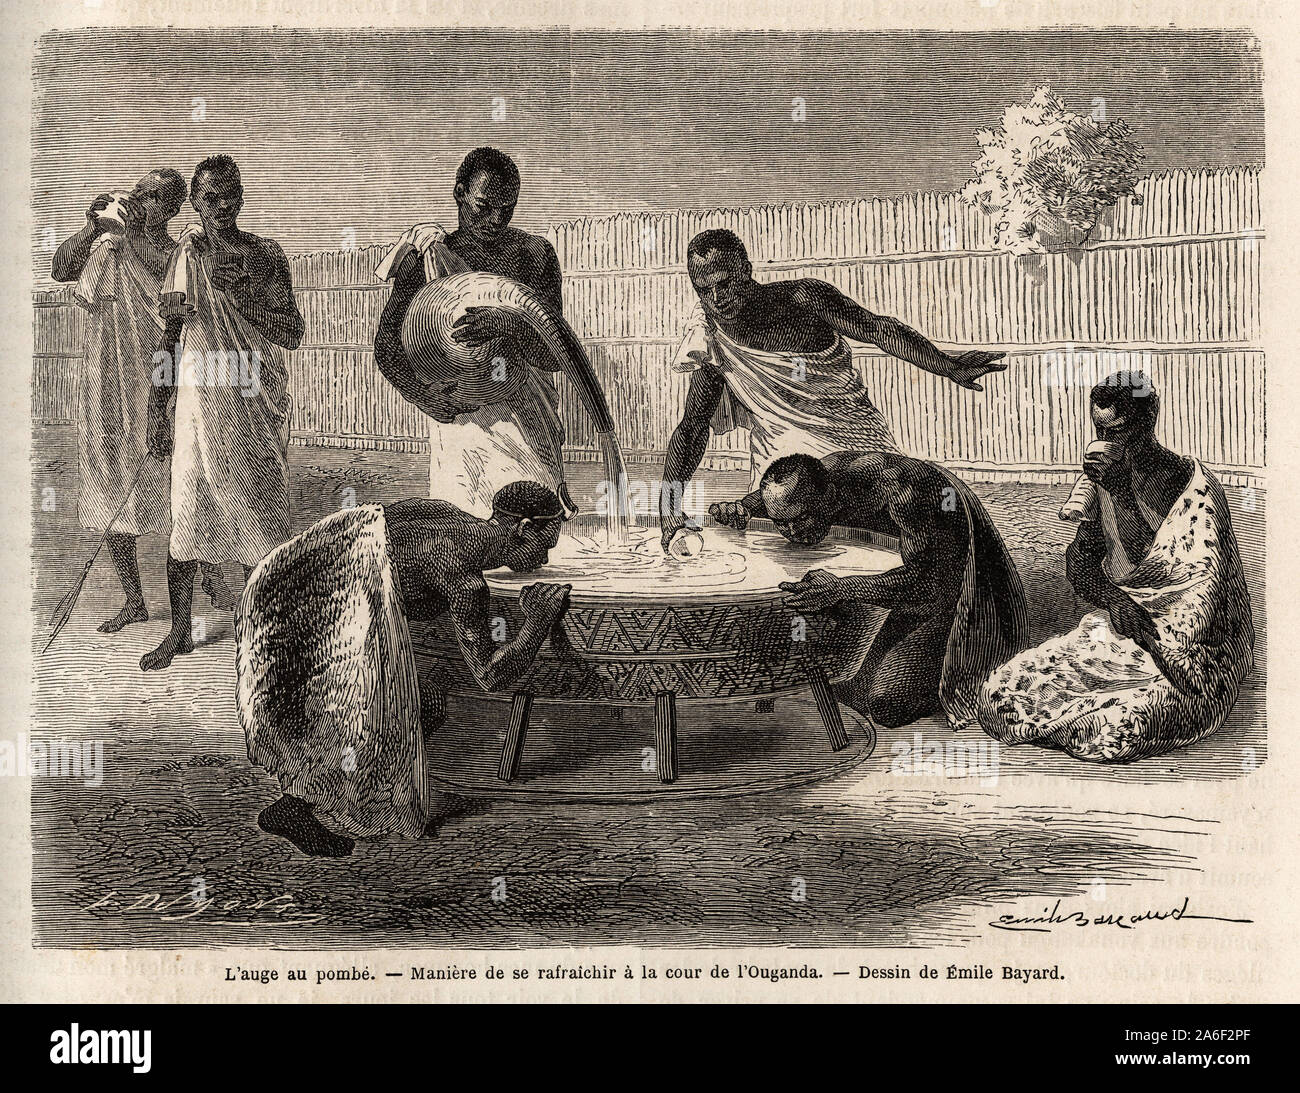 L'Auge au pombe (boisson alcoolisee par Fermentation), maniere de se rafraichir a la cour dans le Karague (a l'Ouest du lac Victoria, dans l'Actuel Stockfoto